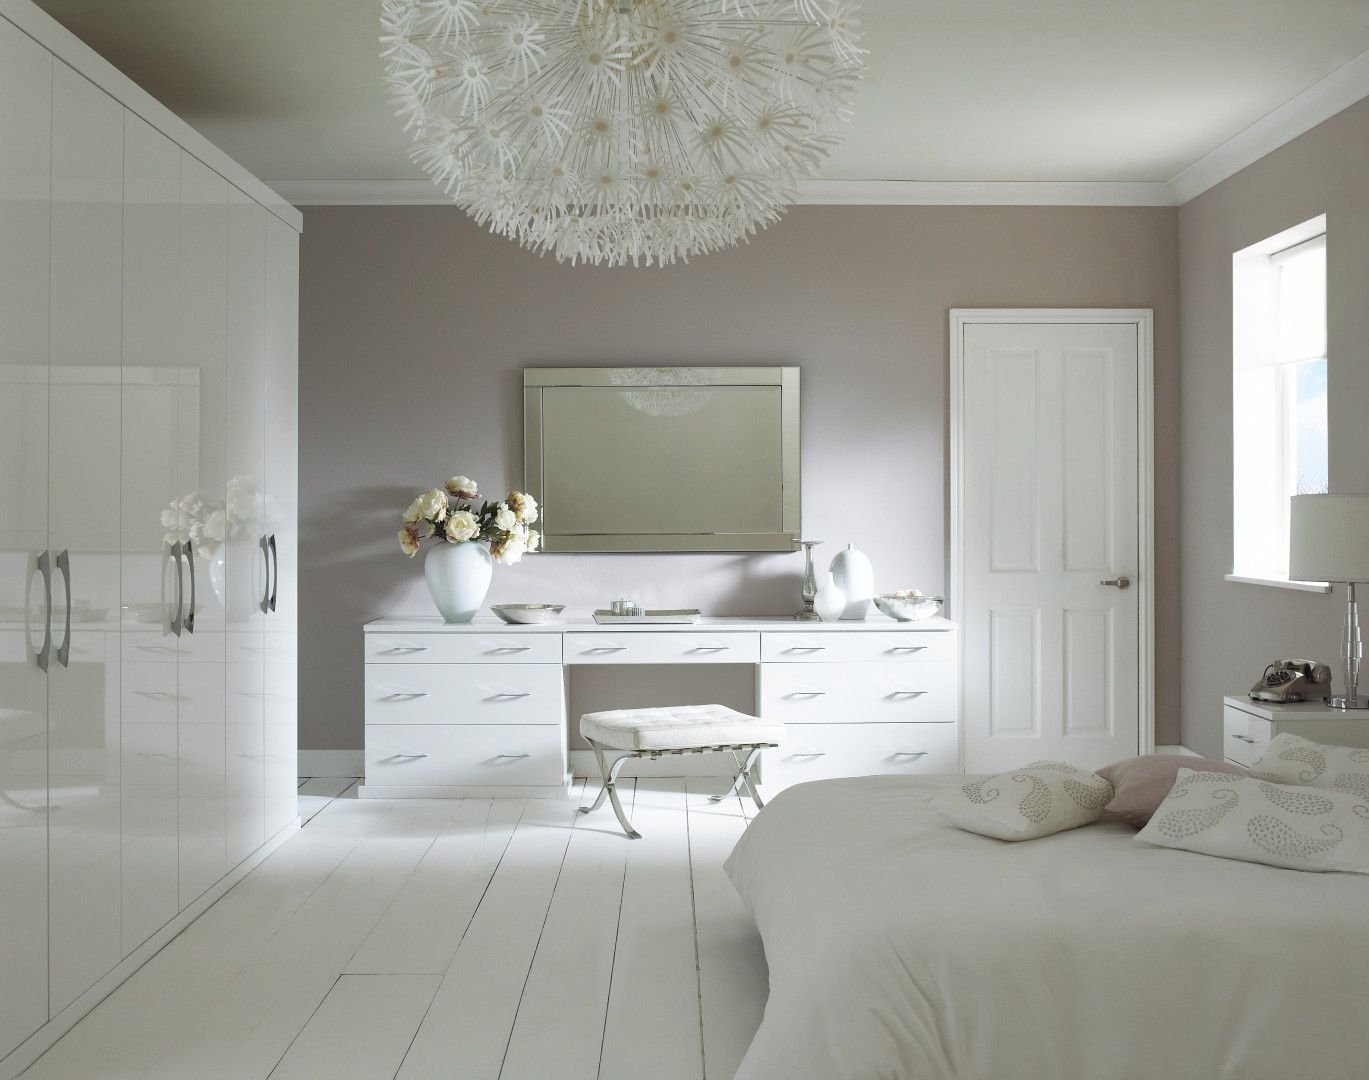 Белая мебель в интерьере гостиной фото